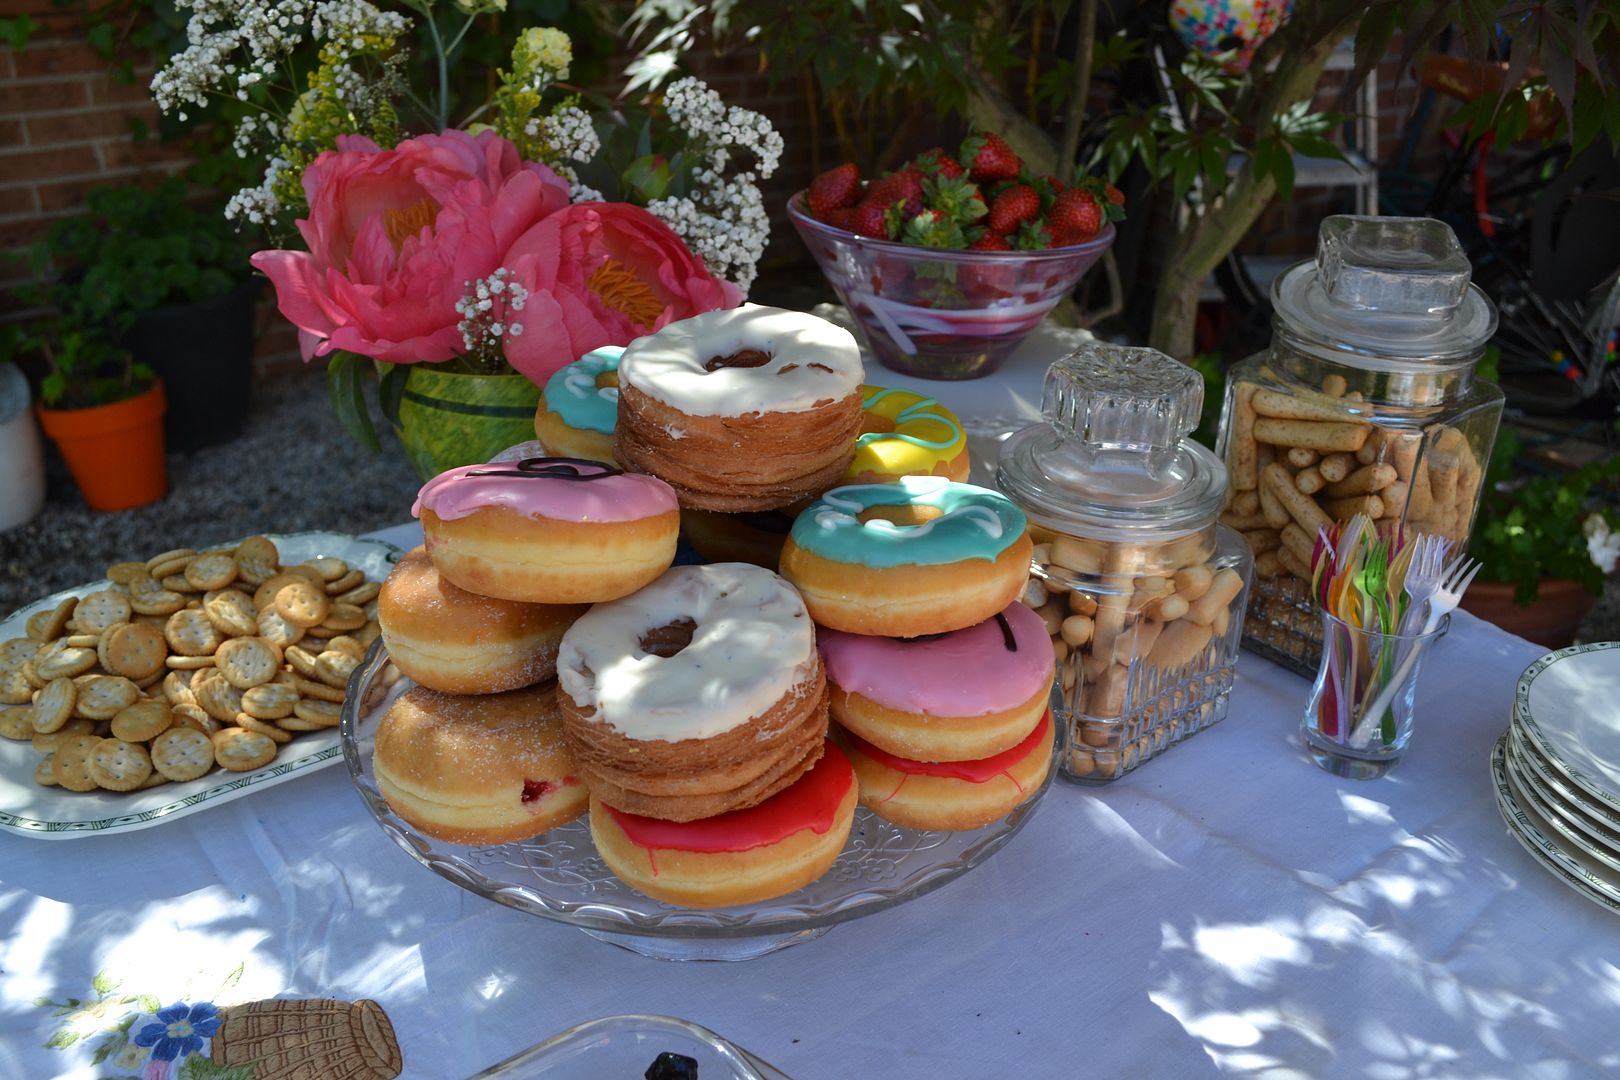  photo buffet-comida-celebracioacuten-terraza-jardiacuten-fiesta13_zps447477c2.jpg